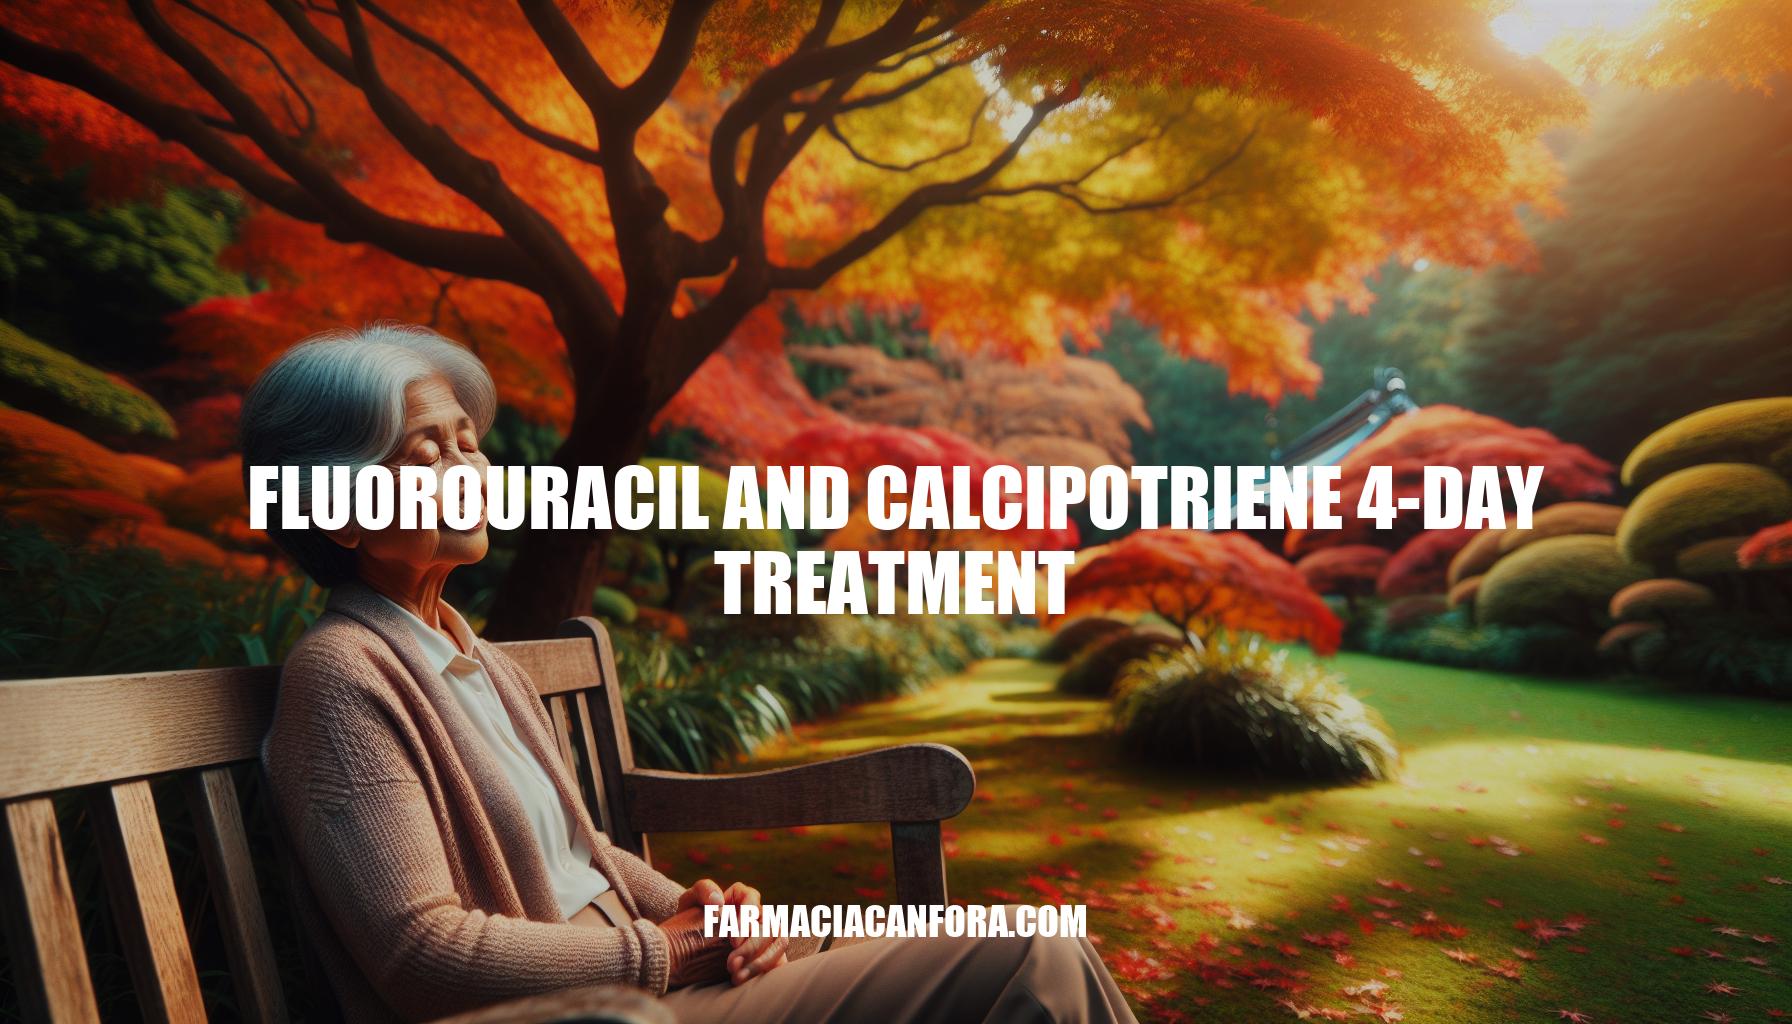 Fluorouracil and Calcipotriene 4-Day Treatment Guide